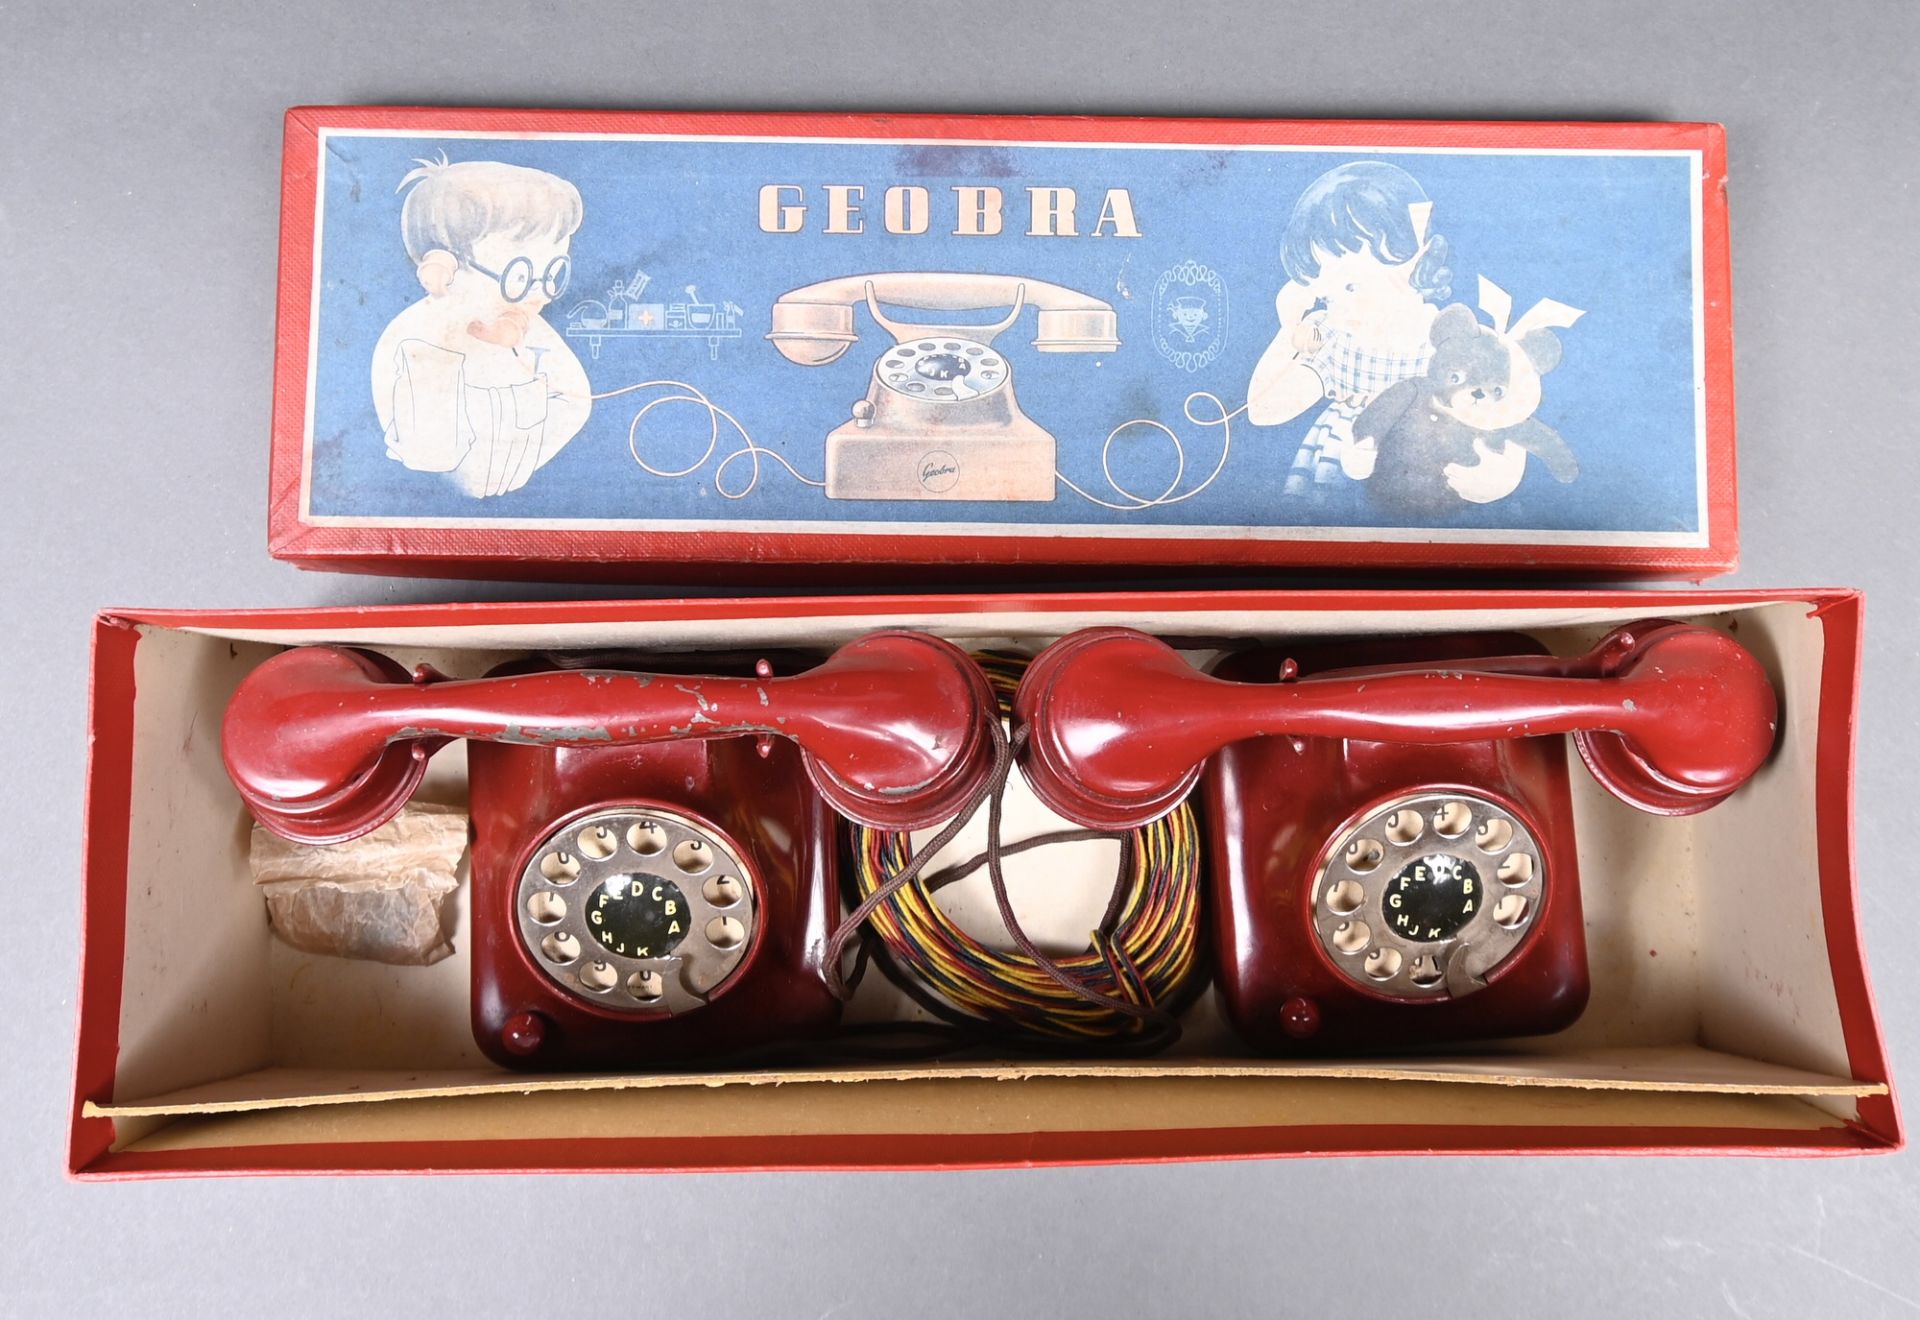 Kindertelefonanlage "Geobra" um 1950, im Originalkarton, bespielt aber gut erhalten